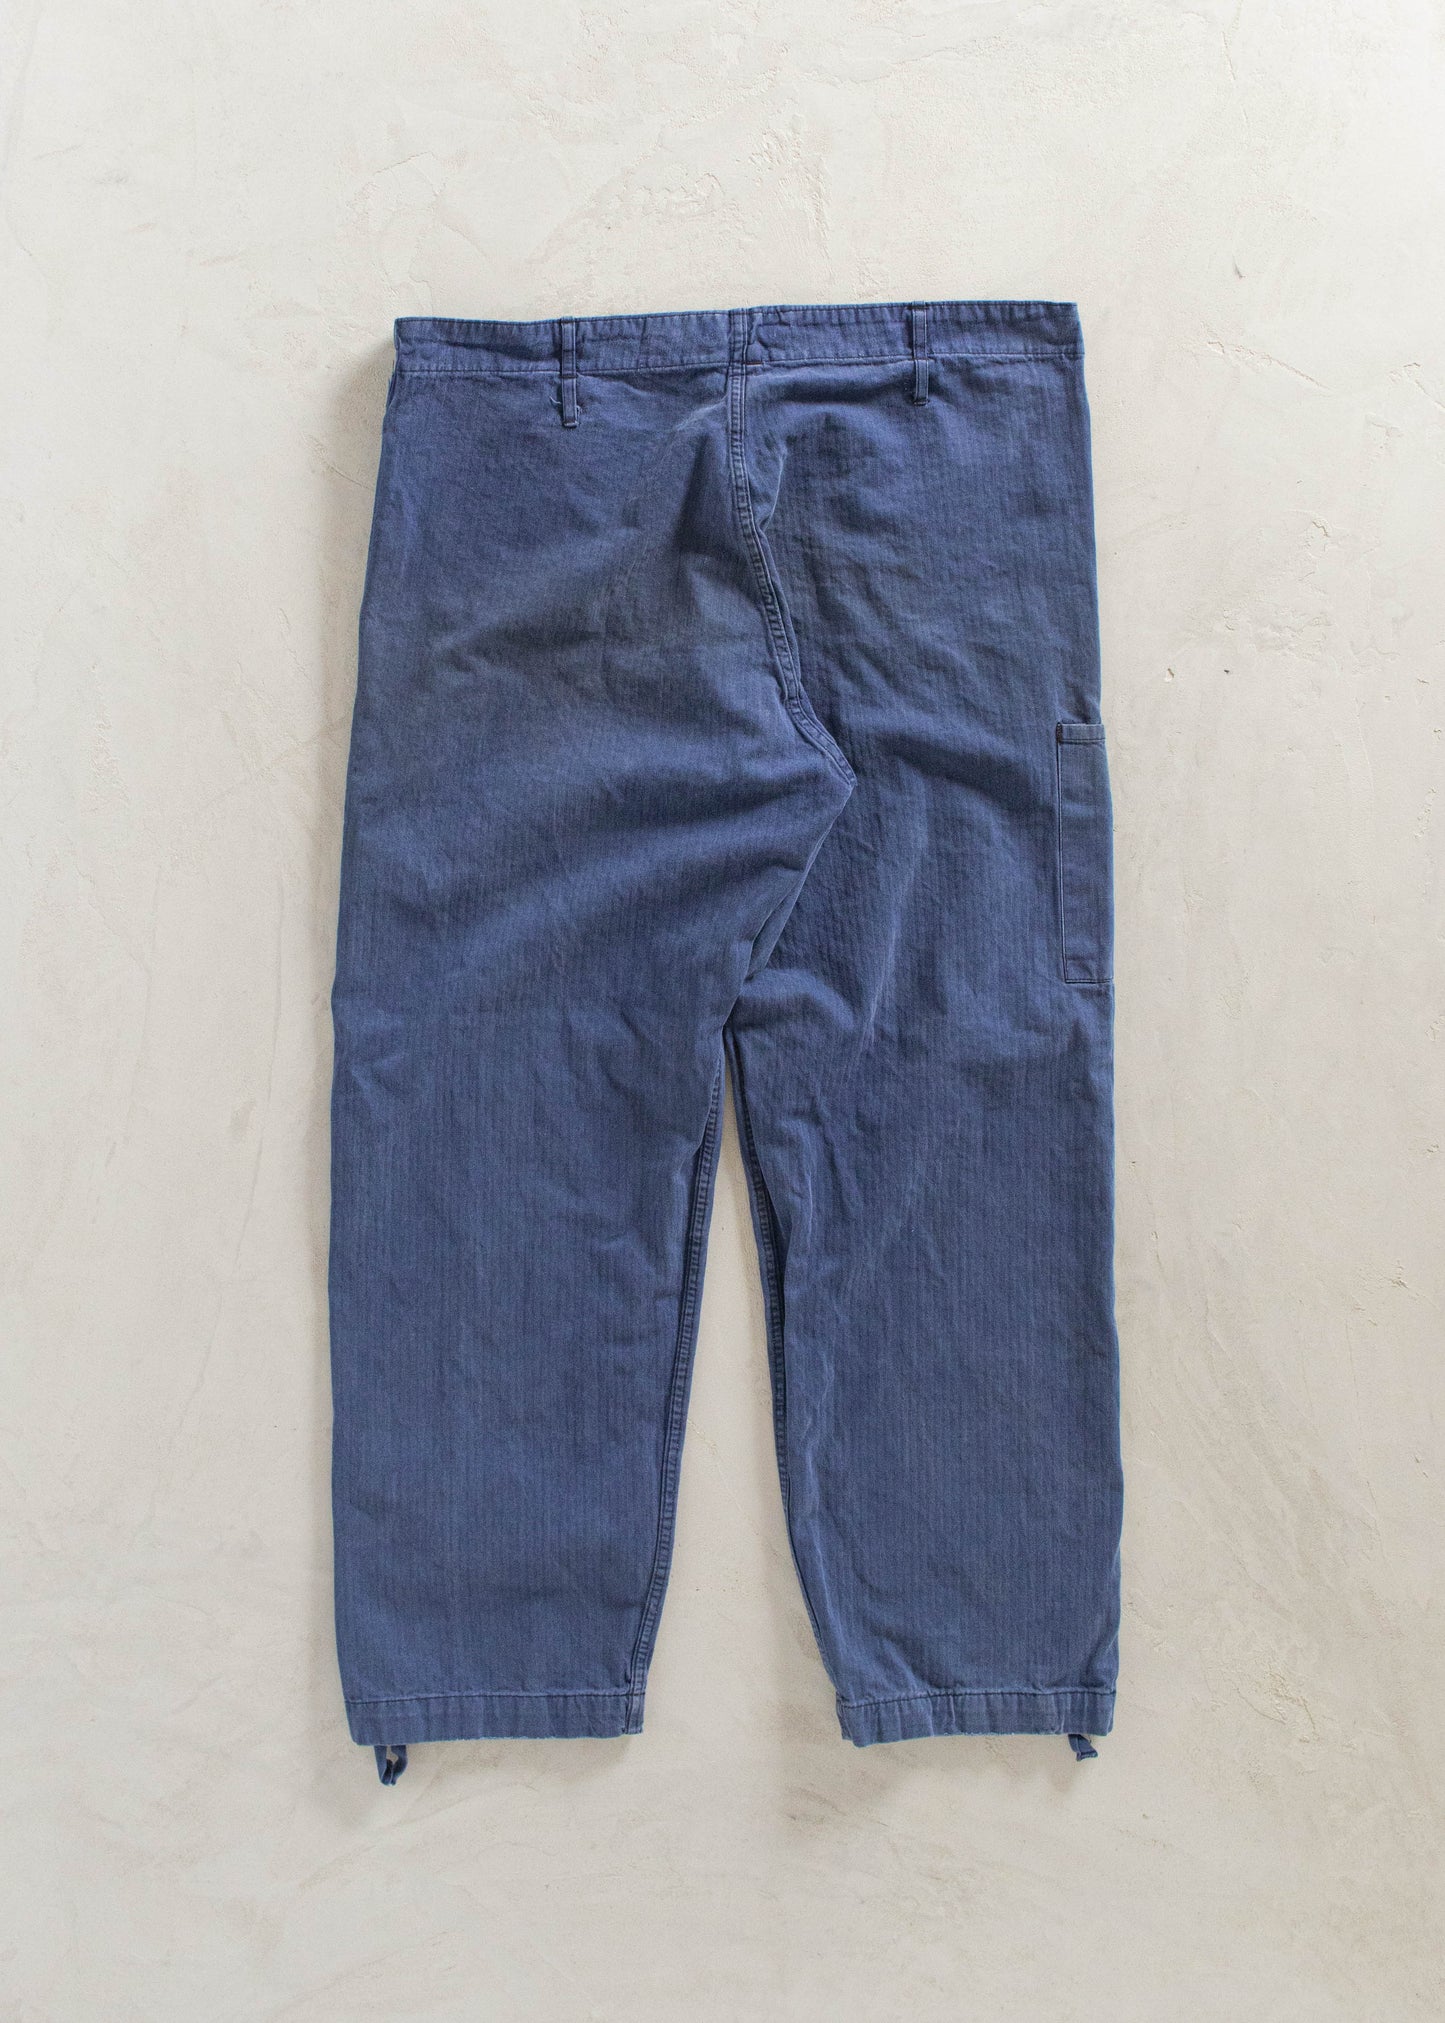 Vintage 1980s HTB Bleu de Travail European Workwear Pants Size Women's 33 Men's 36